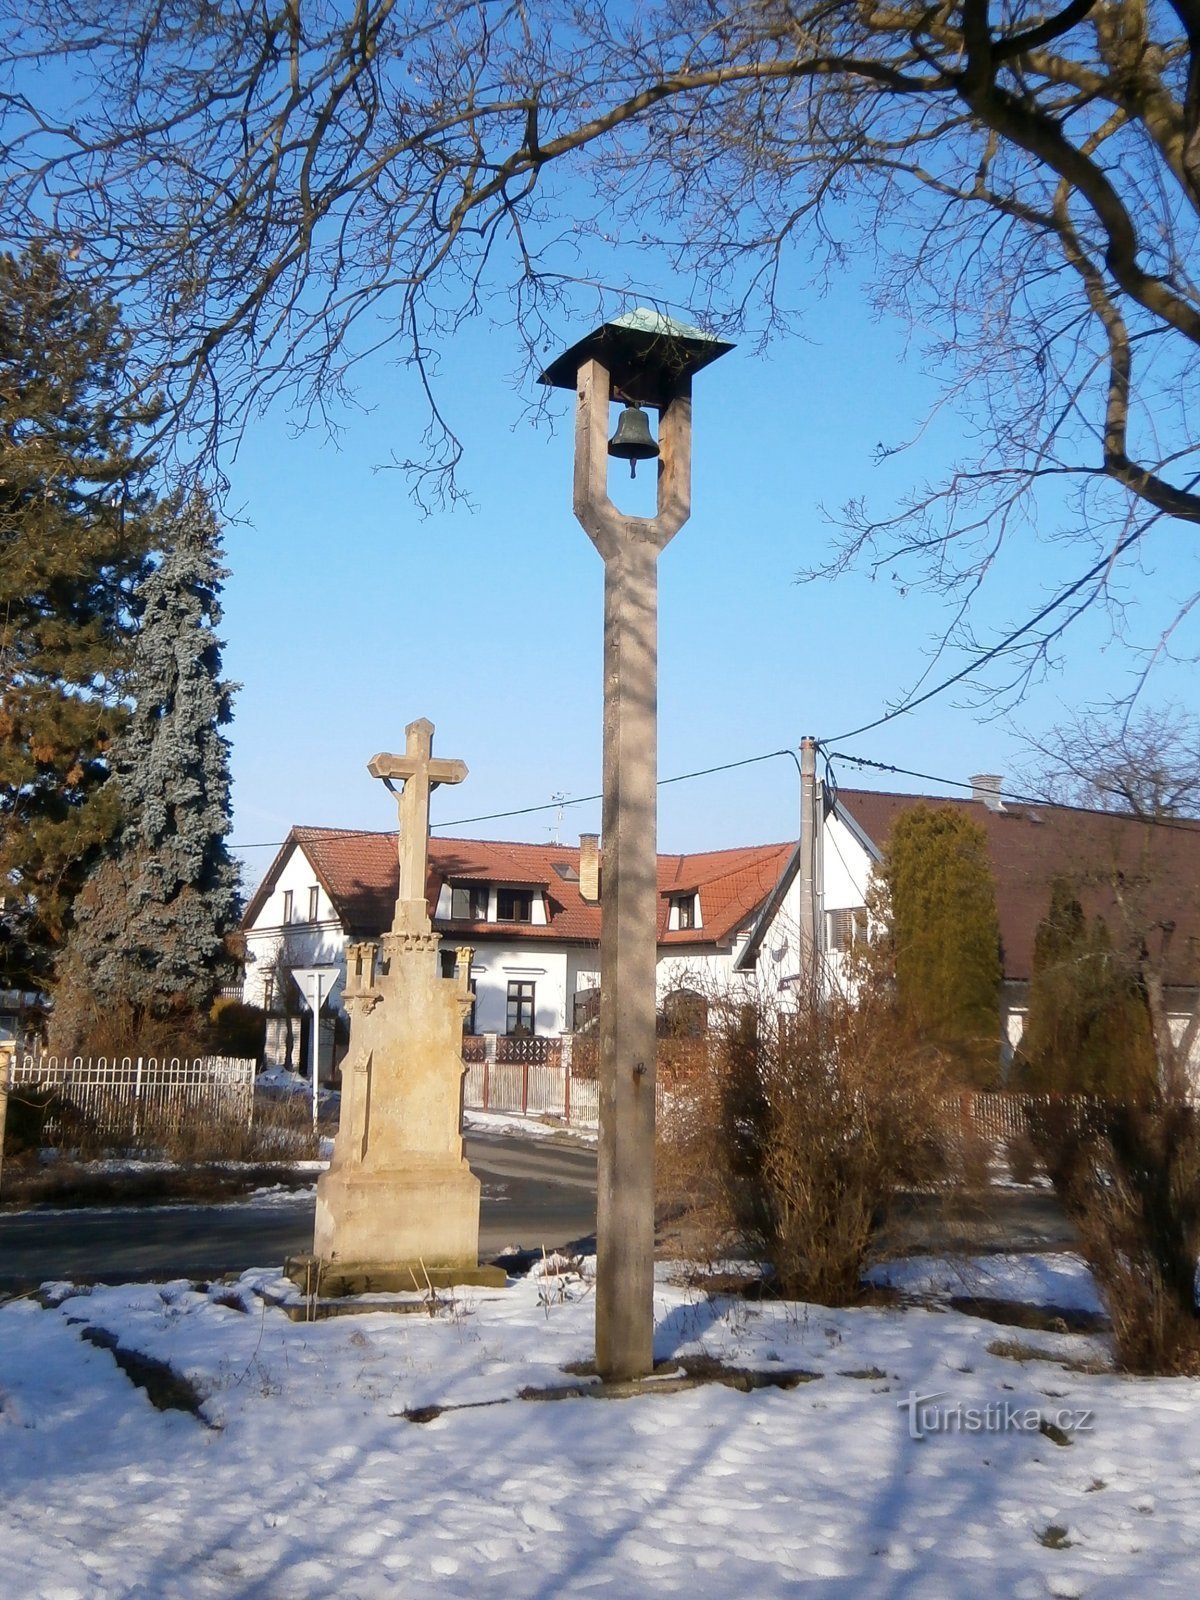 Tháp chuông và thánh giá ở Roudnička (Hradec Králové, ngày 14.2.2017 tháng XNUMX năm XNUMX)